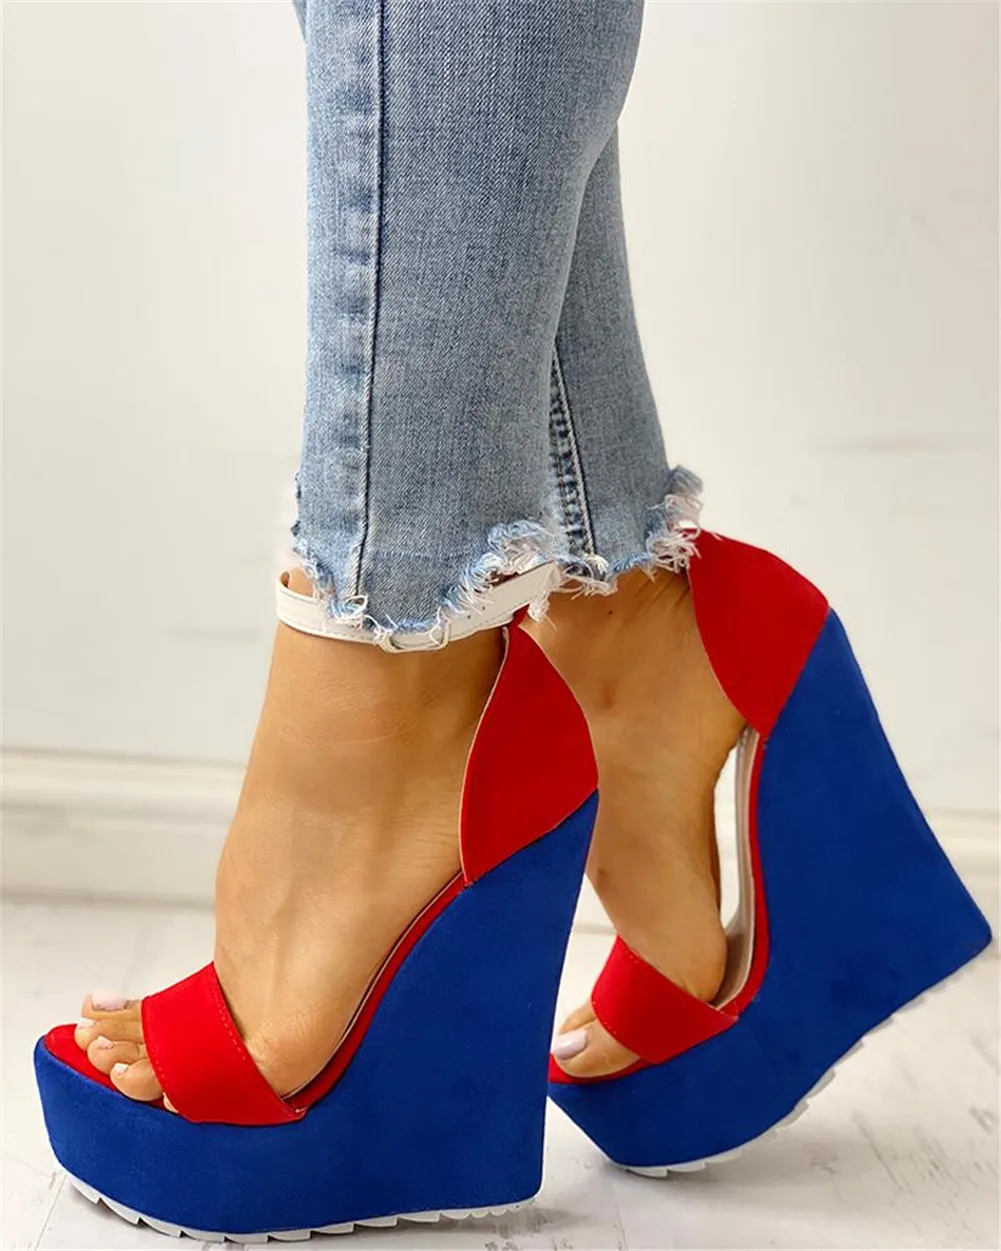 INS/Женская обувь для отдыха наивысшего качества; цвет красный, синий; Летние босоножки года; женские пикантные вечерние туфли на высоком каблуке 15 см и платформе